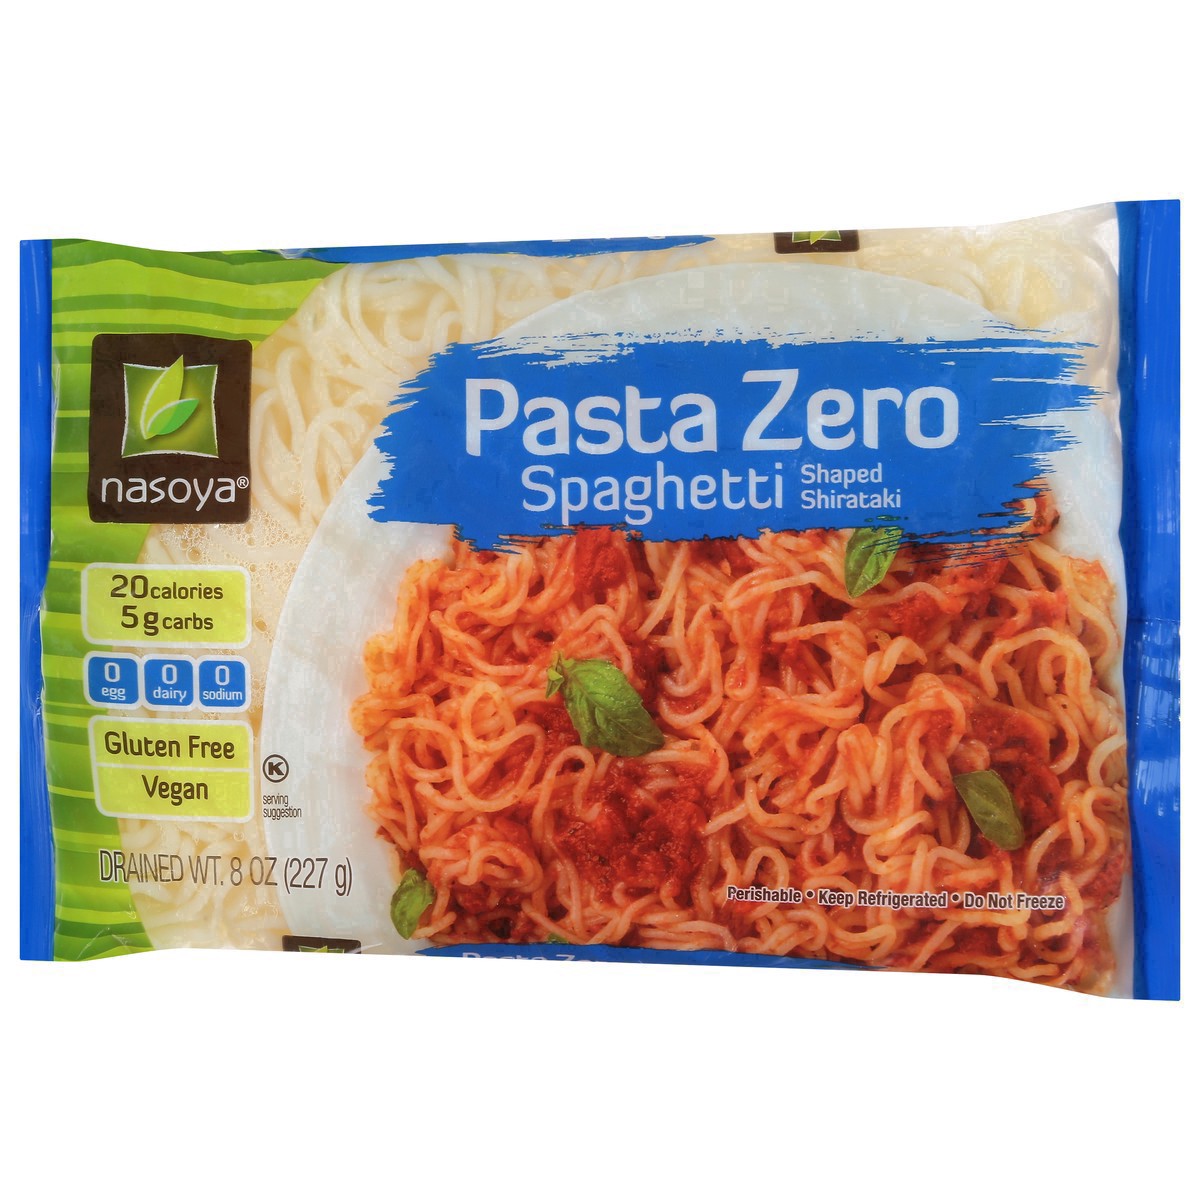 slide 10 of 25, Nasoya Gluten Free Vegan Zero Spaghetti Shaped Shirataki - 8oz, 8 oz